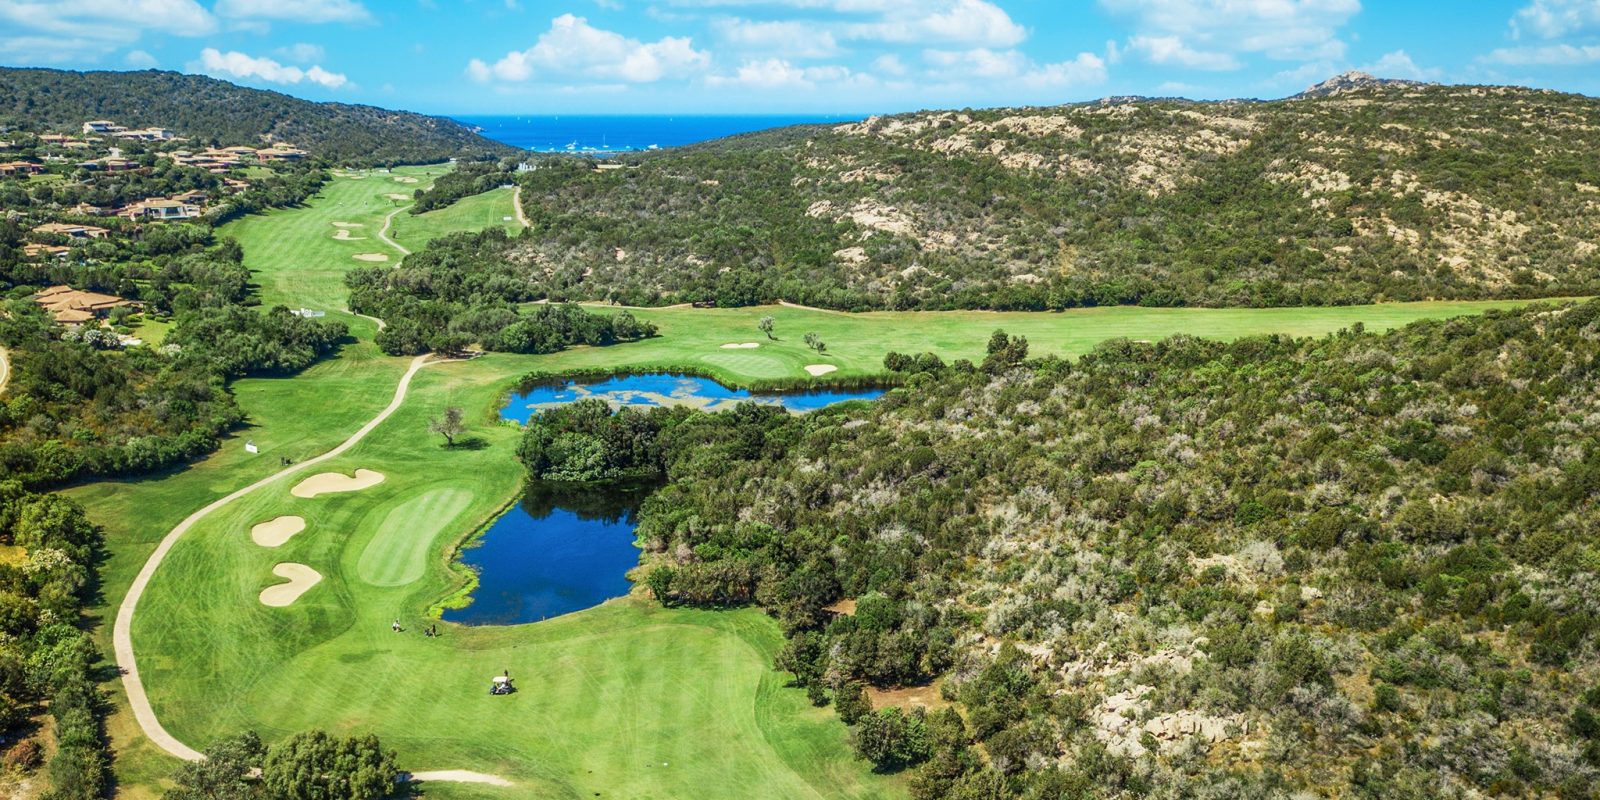 I 5 migliori campi da Golf in Italia + altre esperienze che consiglierei al golfista in vacanza